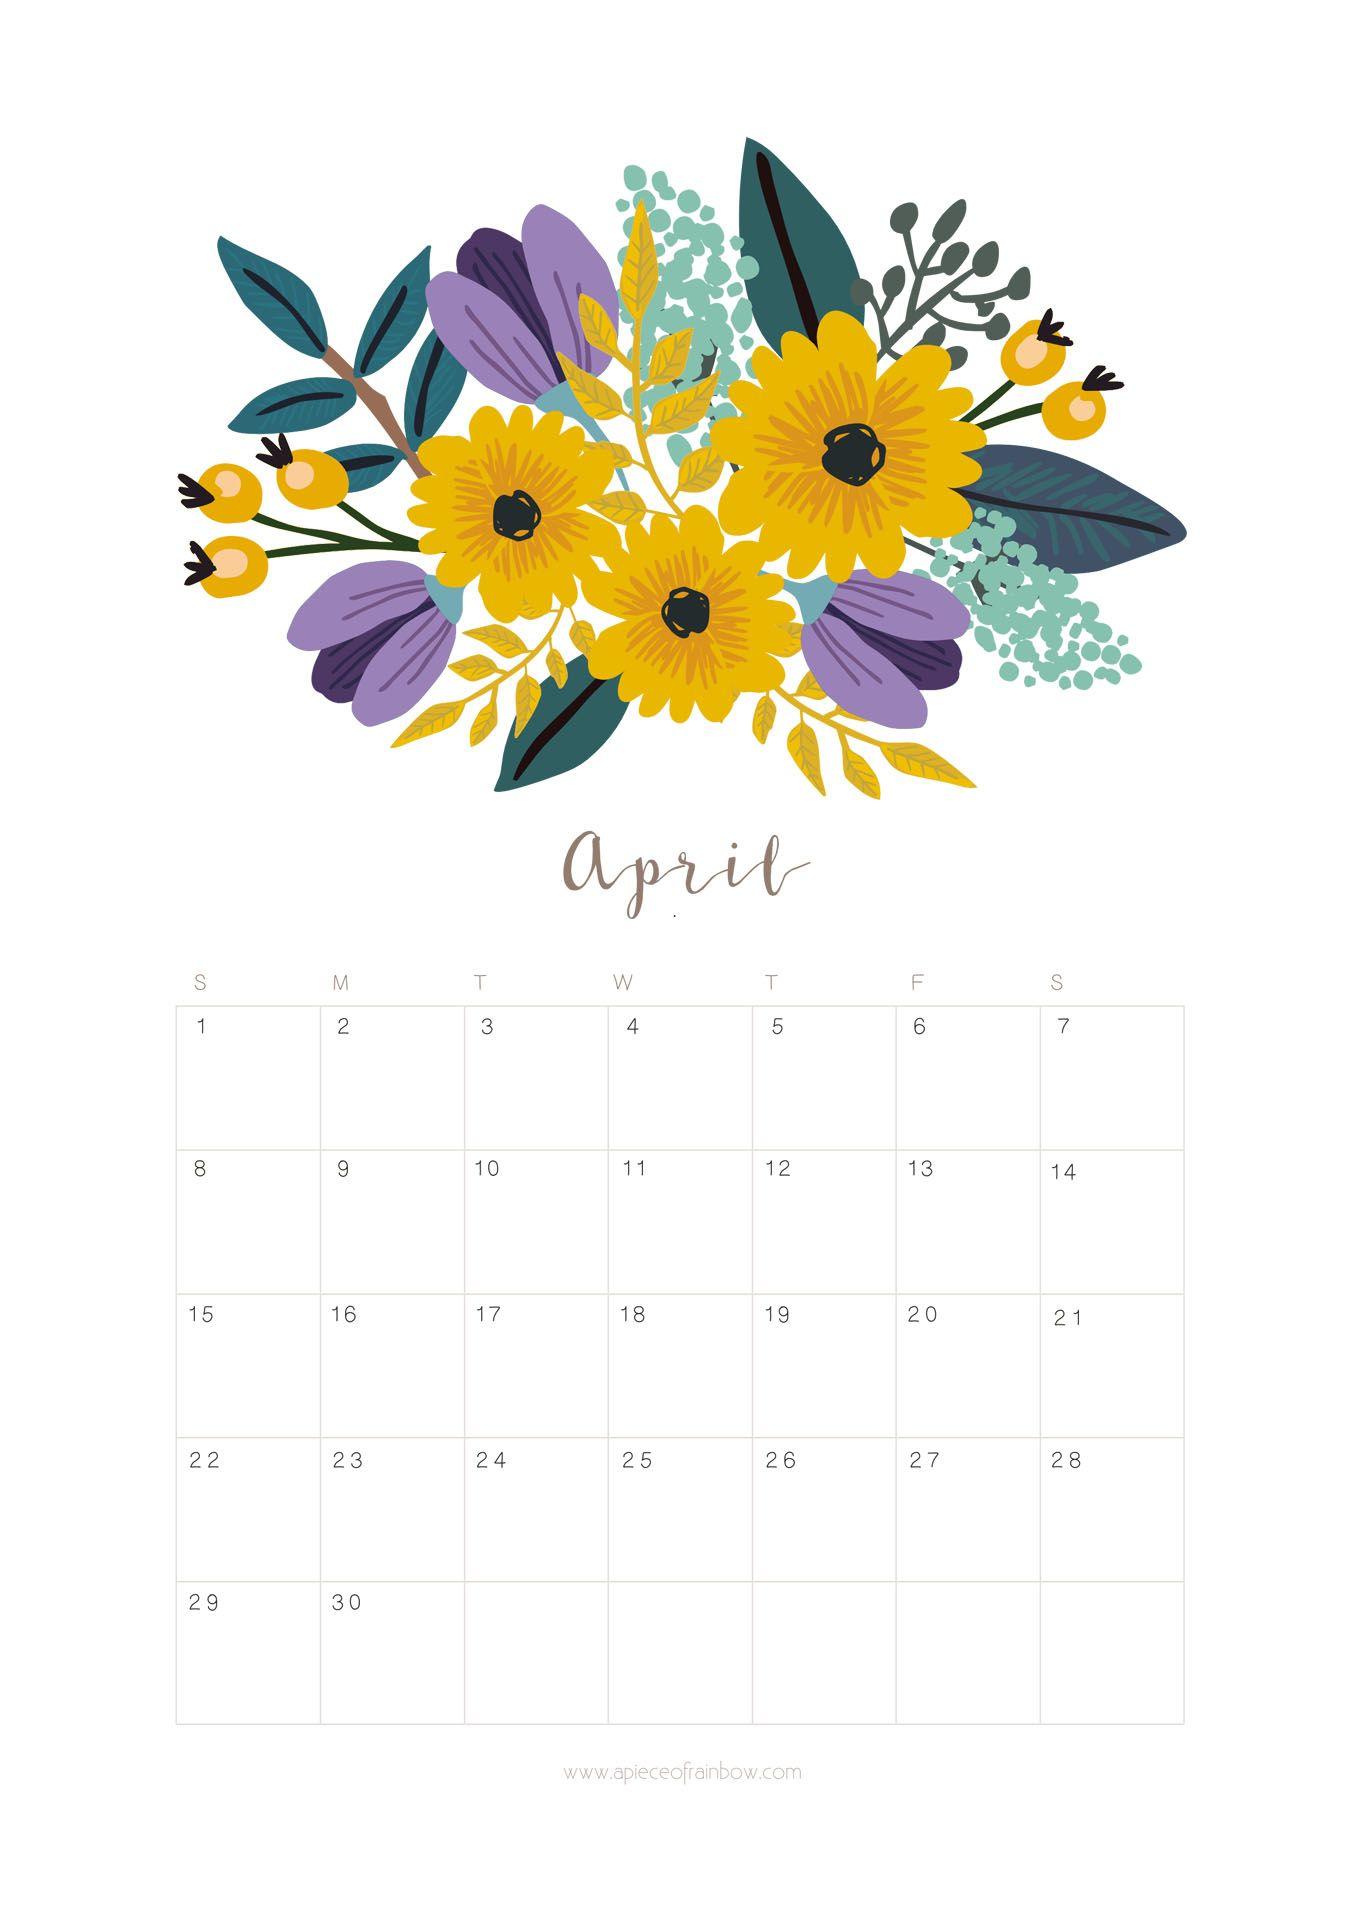 April 2018 Calendar Wallpapers Wallpaper Cave